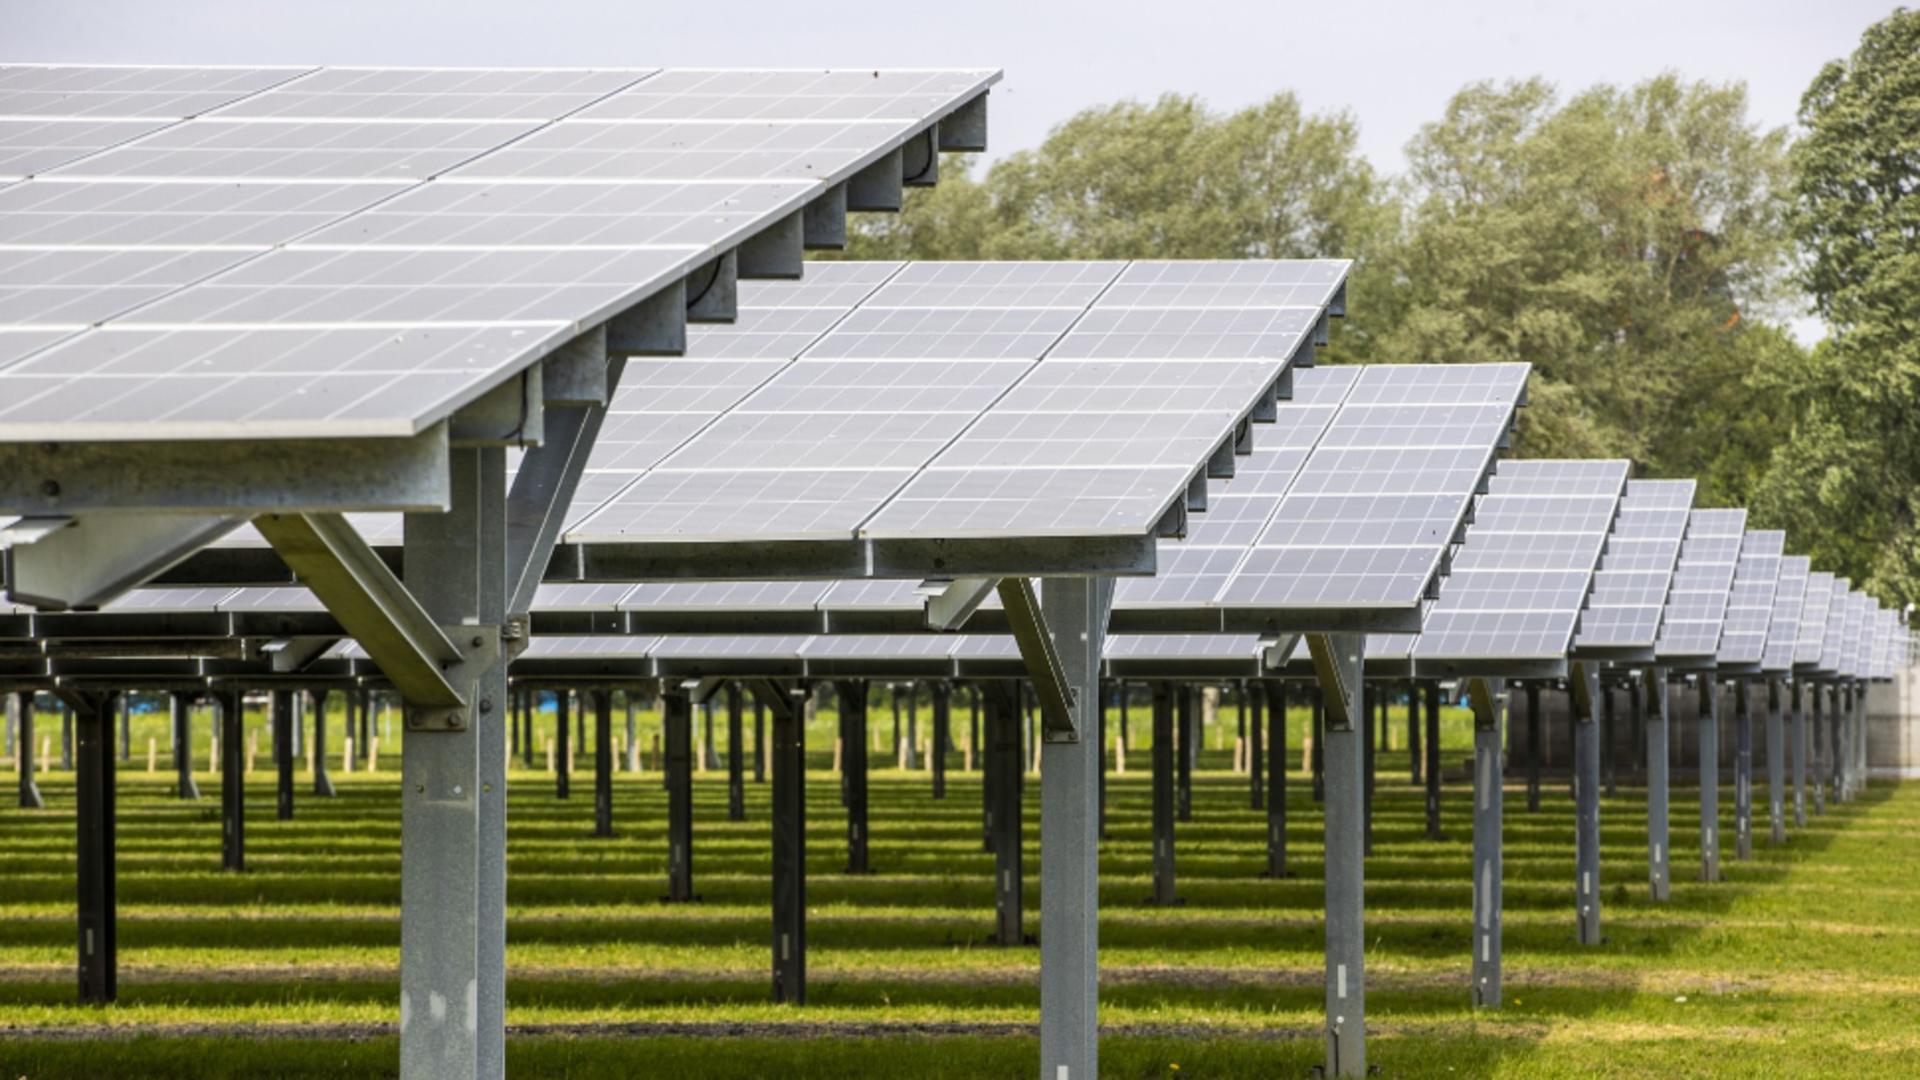 Cum au păgubit patru români mai multe parcuri solare din Belgia cu 565.000 de euro. Acum sunt după gratii și buni de plată  